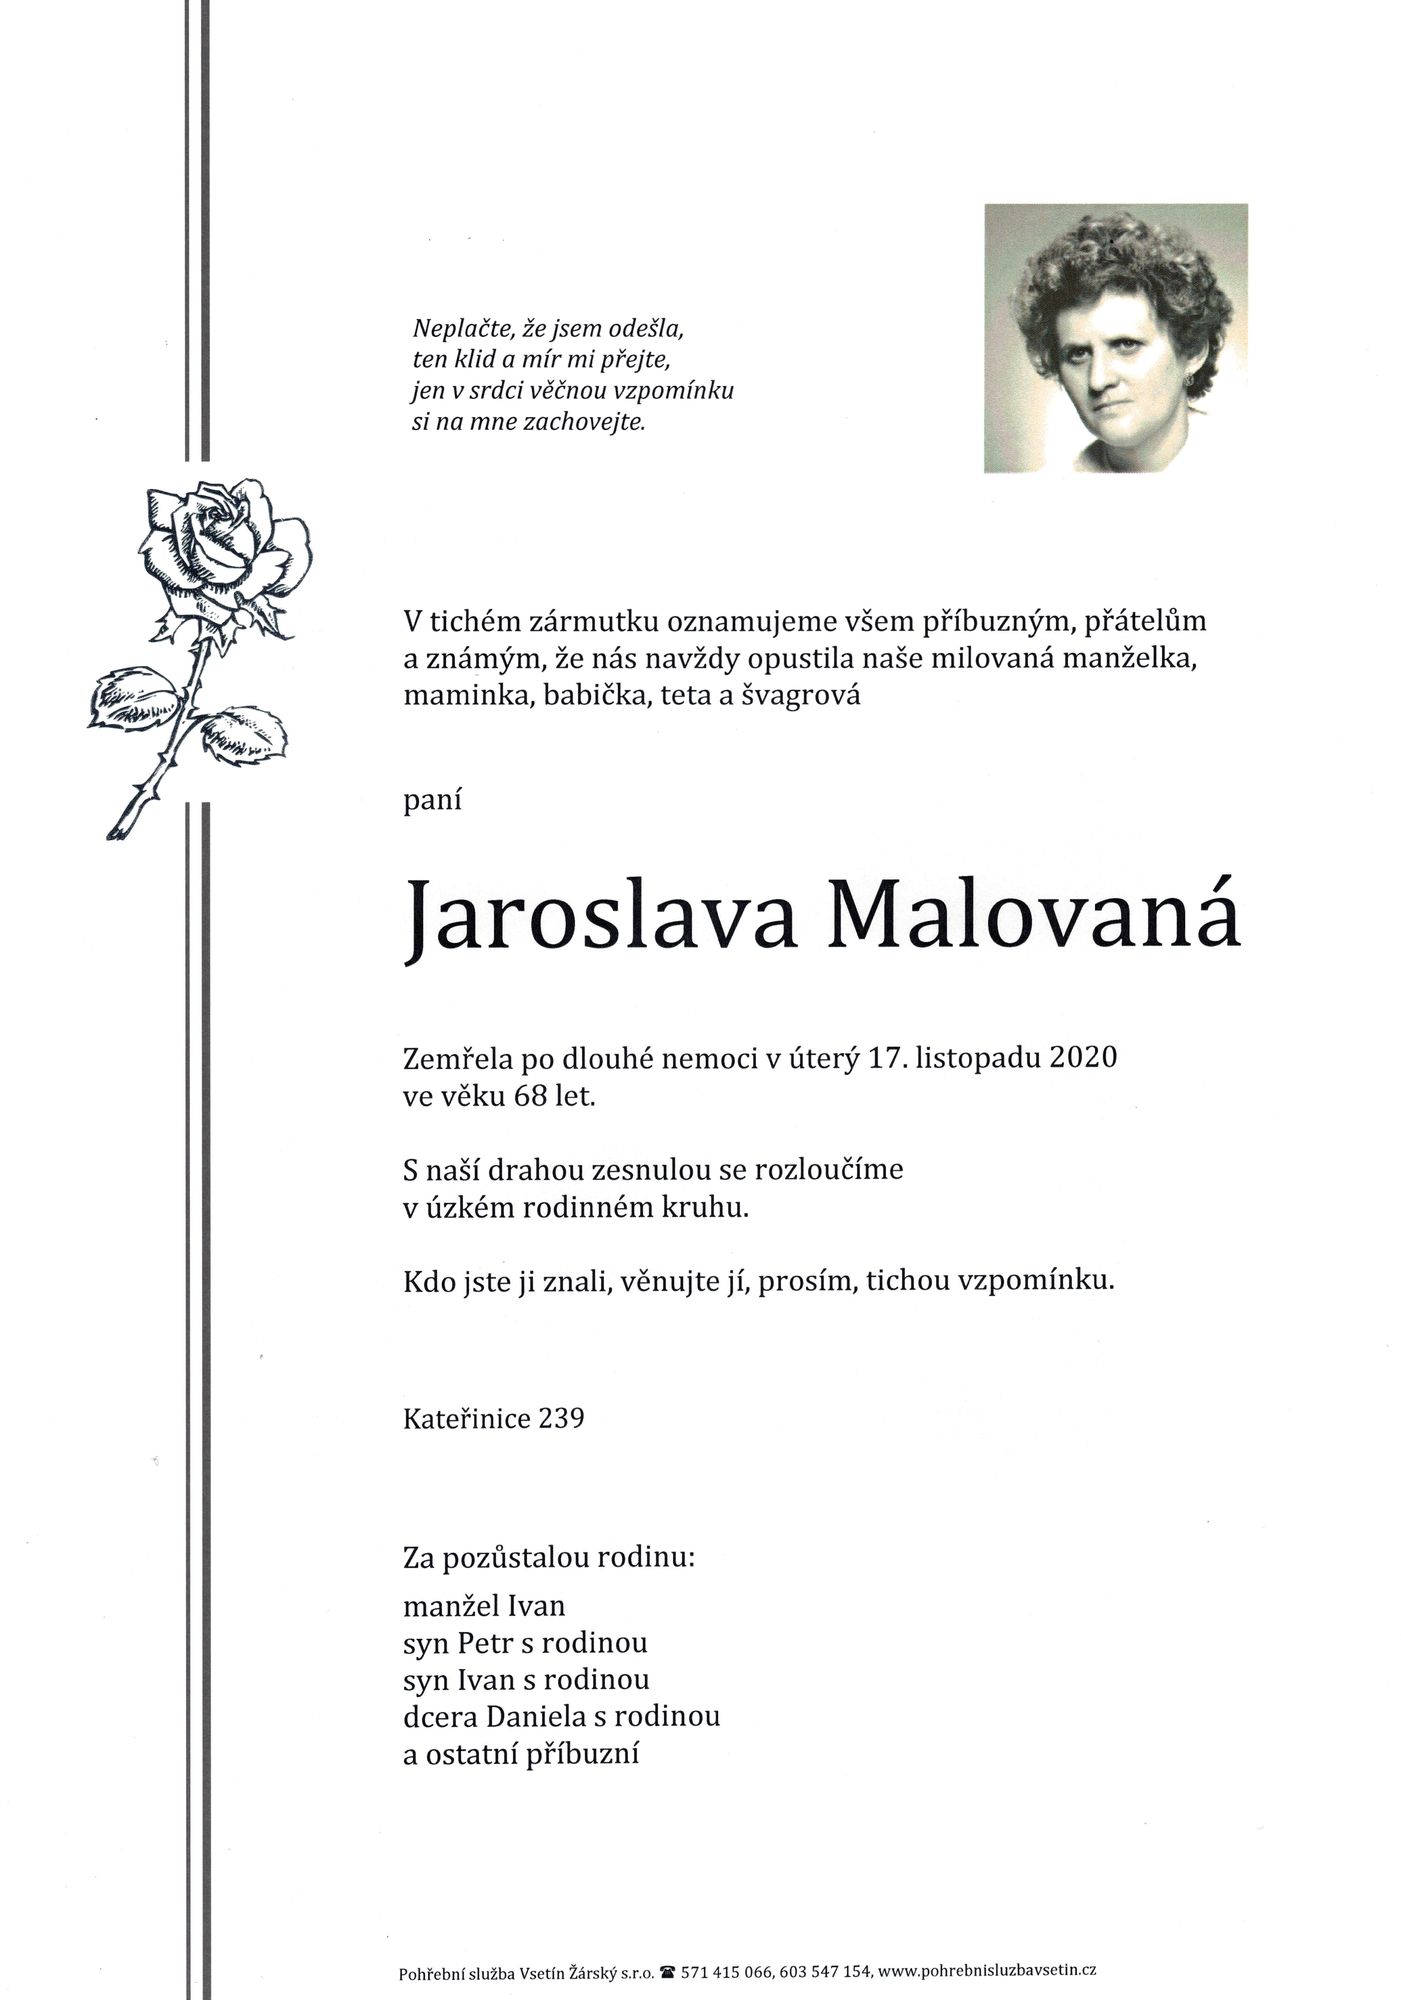 Jaroslava Malovaná